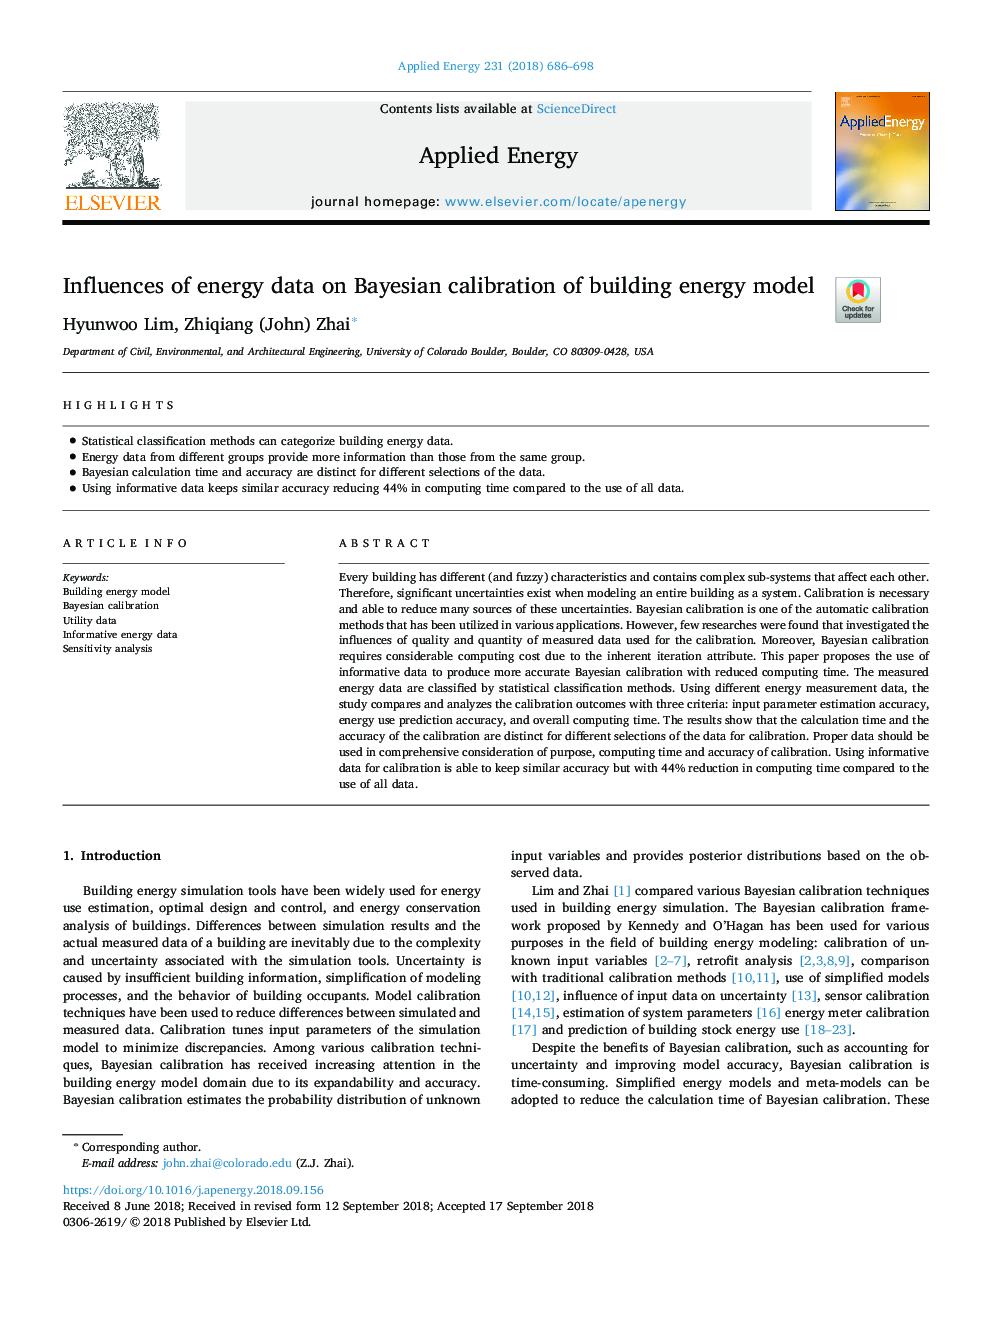 تأثیر داده های انرژی بر کالیبراسیون بیزی از مدل انرژی ساختمان